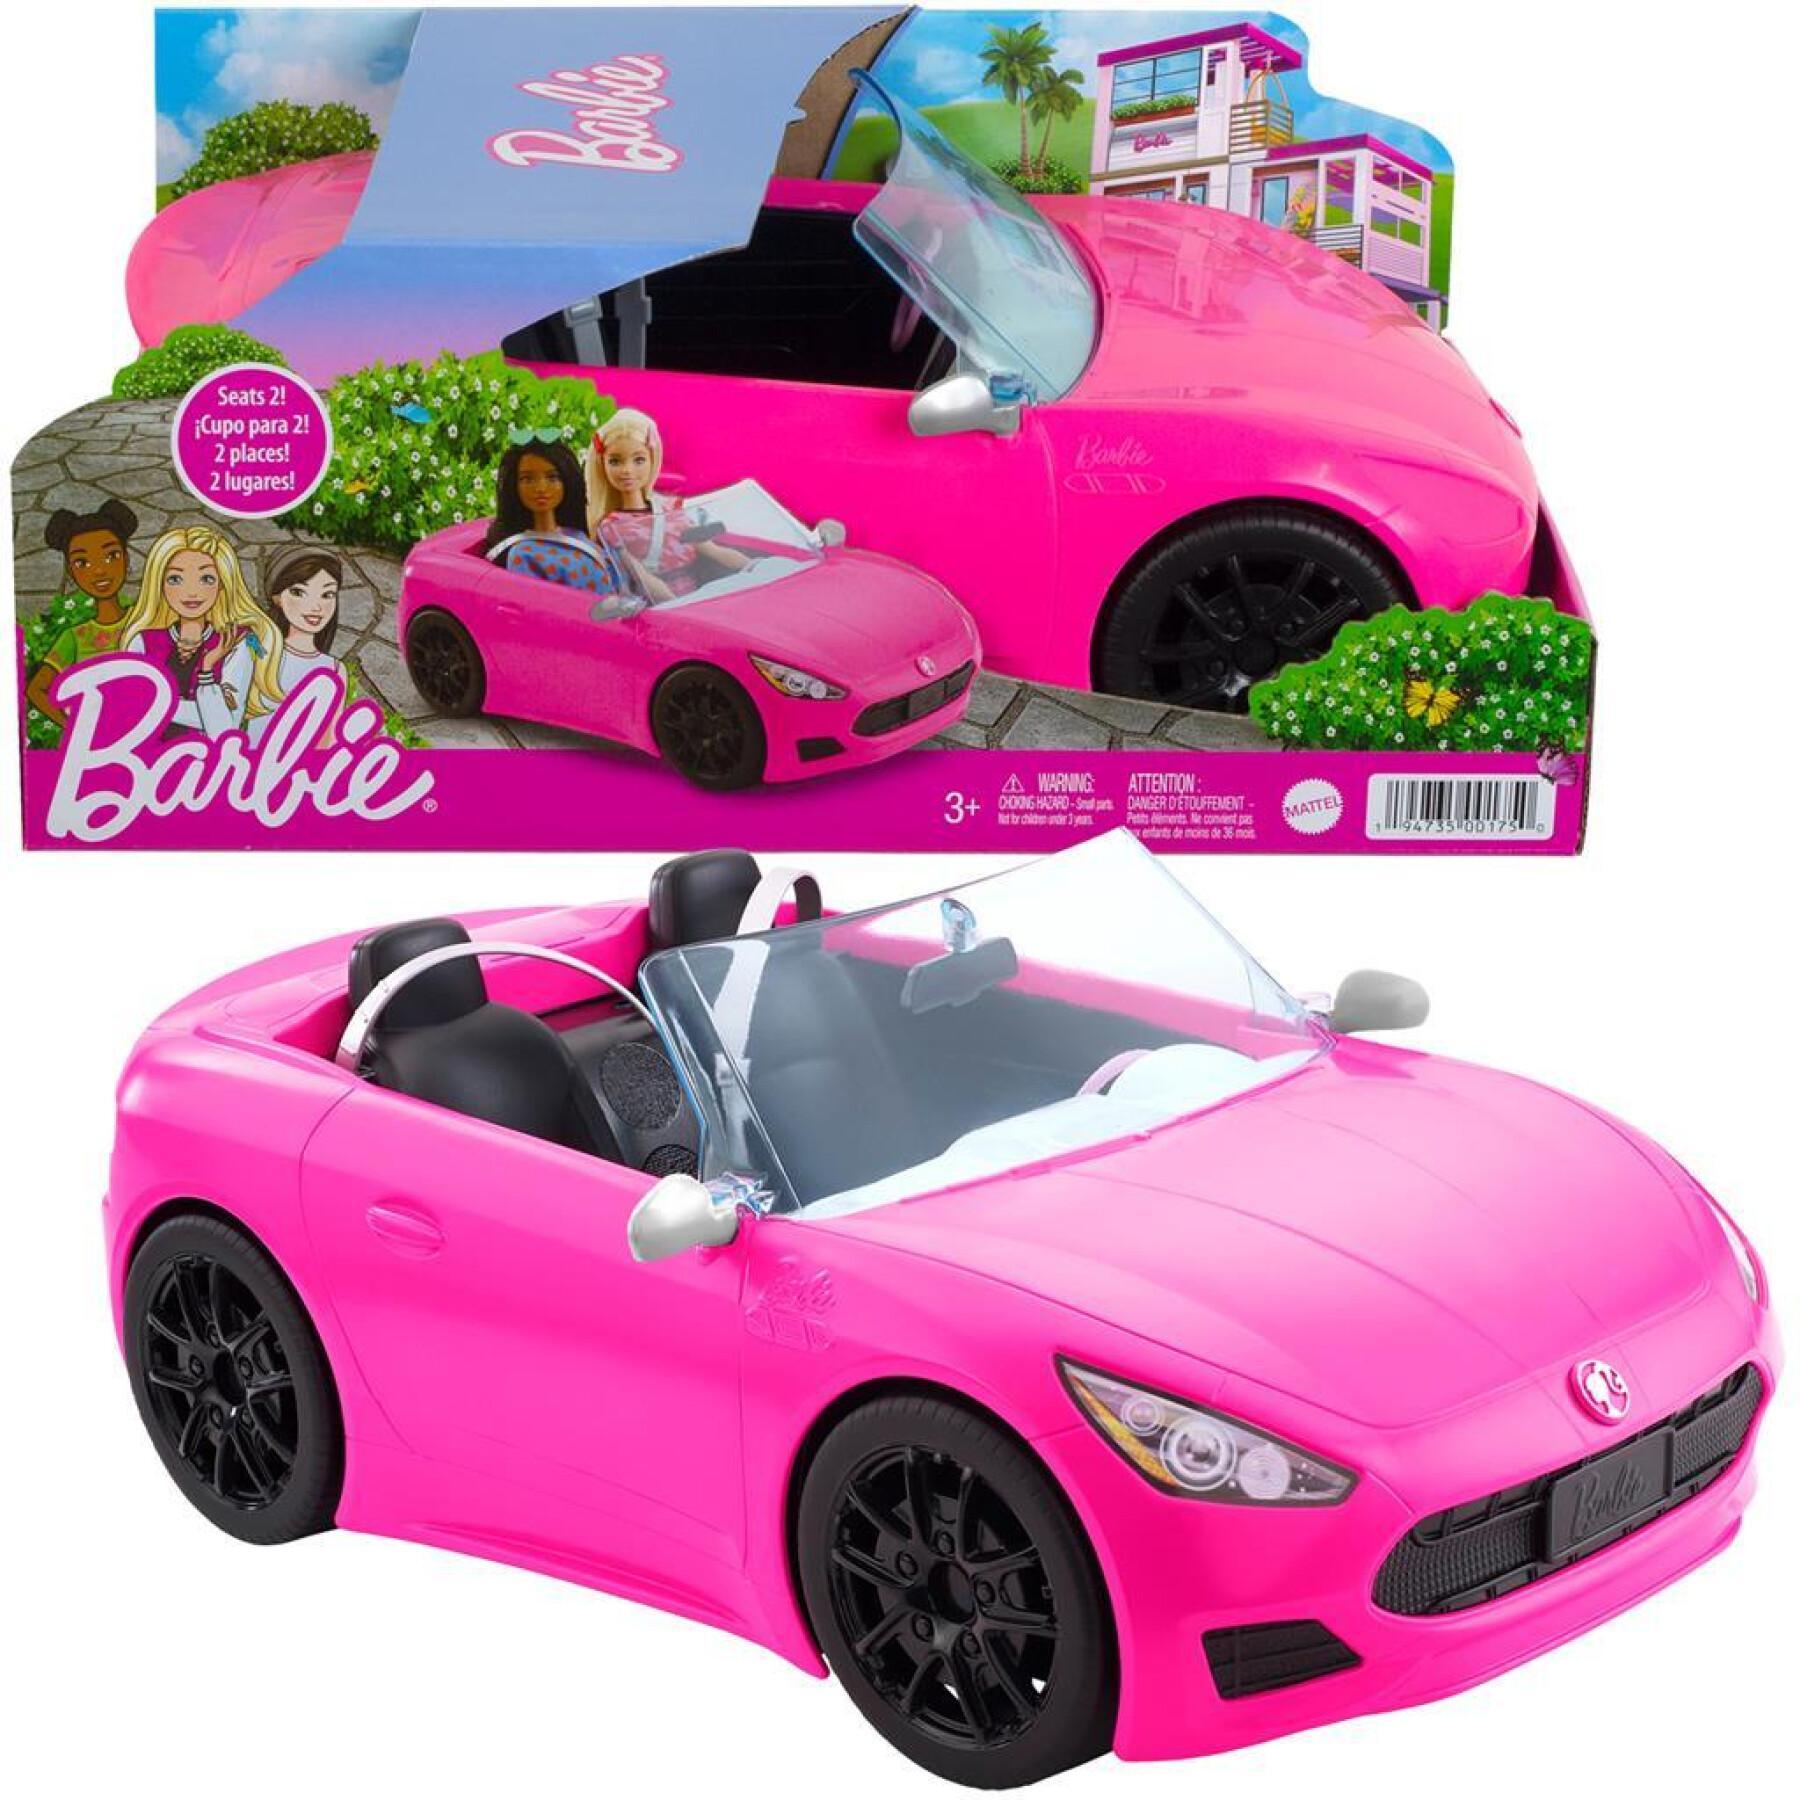 Carro descapotável Barbie Mattel France